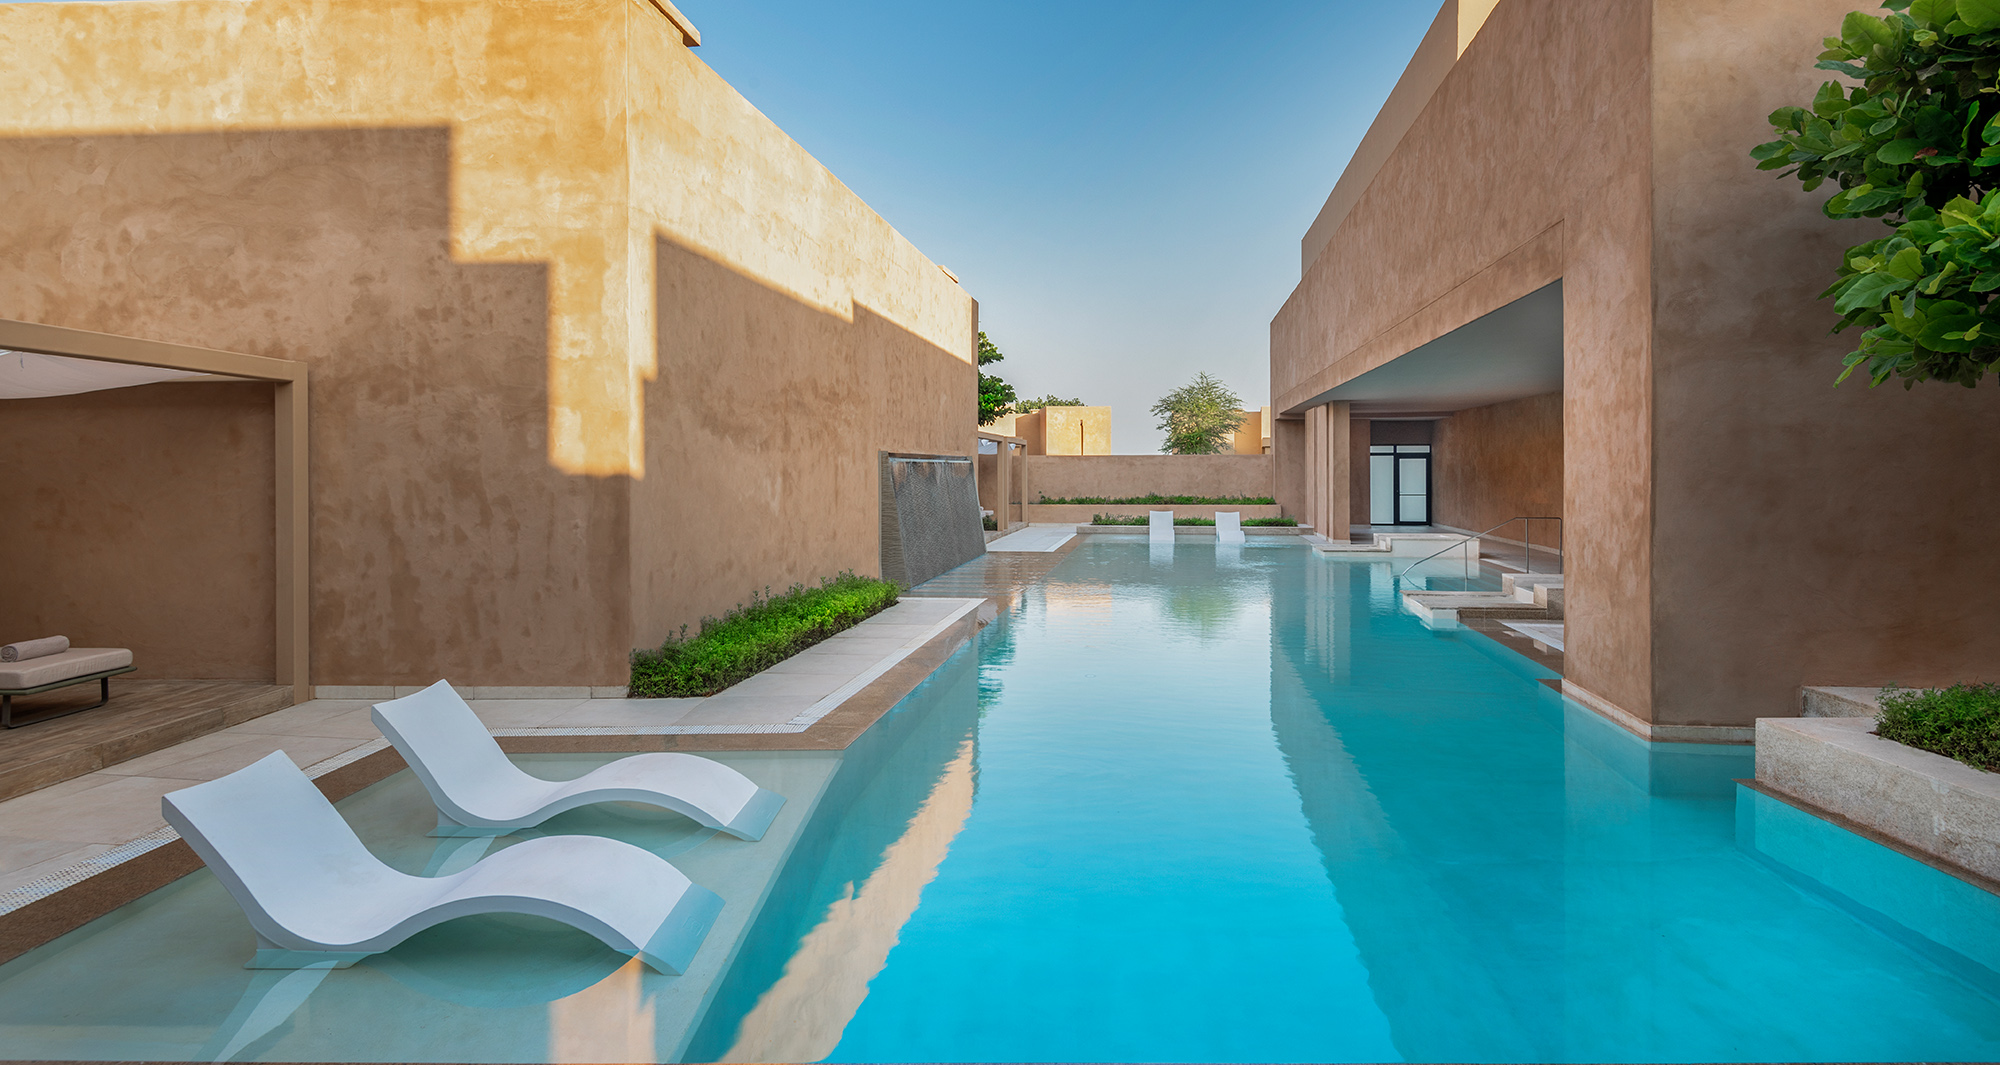 Es ist das bislang größte Wellness Retreat im Nahen Osten: Das neue Zulal Wellness Resort in Katar vereint zum weltweit ersten Mal Traditionelle Arabische Heilkunde mit Islamischer Medizin. Und verspricht damit einzigartige Entspannung – auch für Familien.